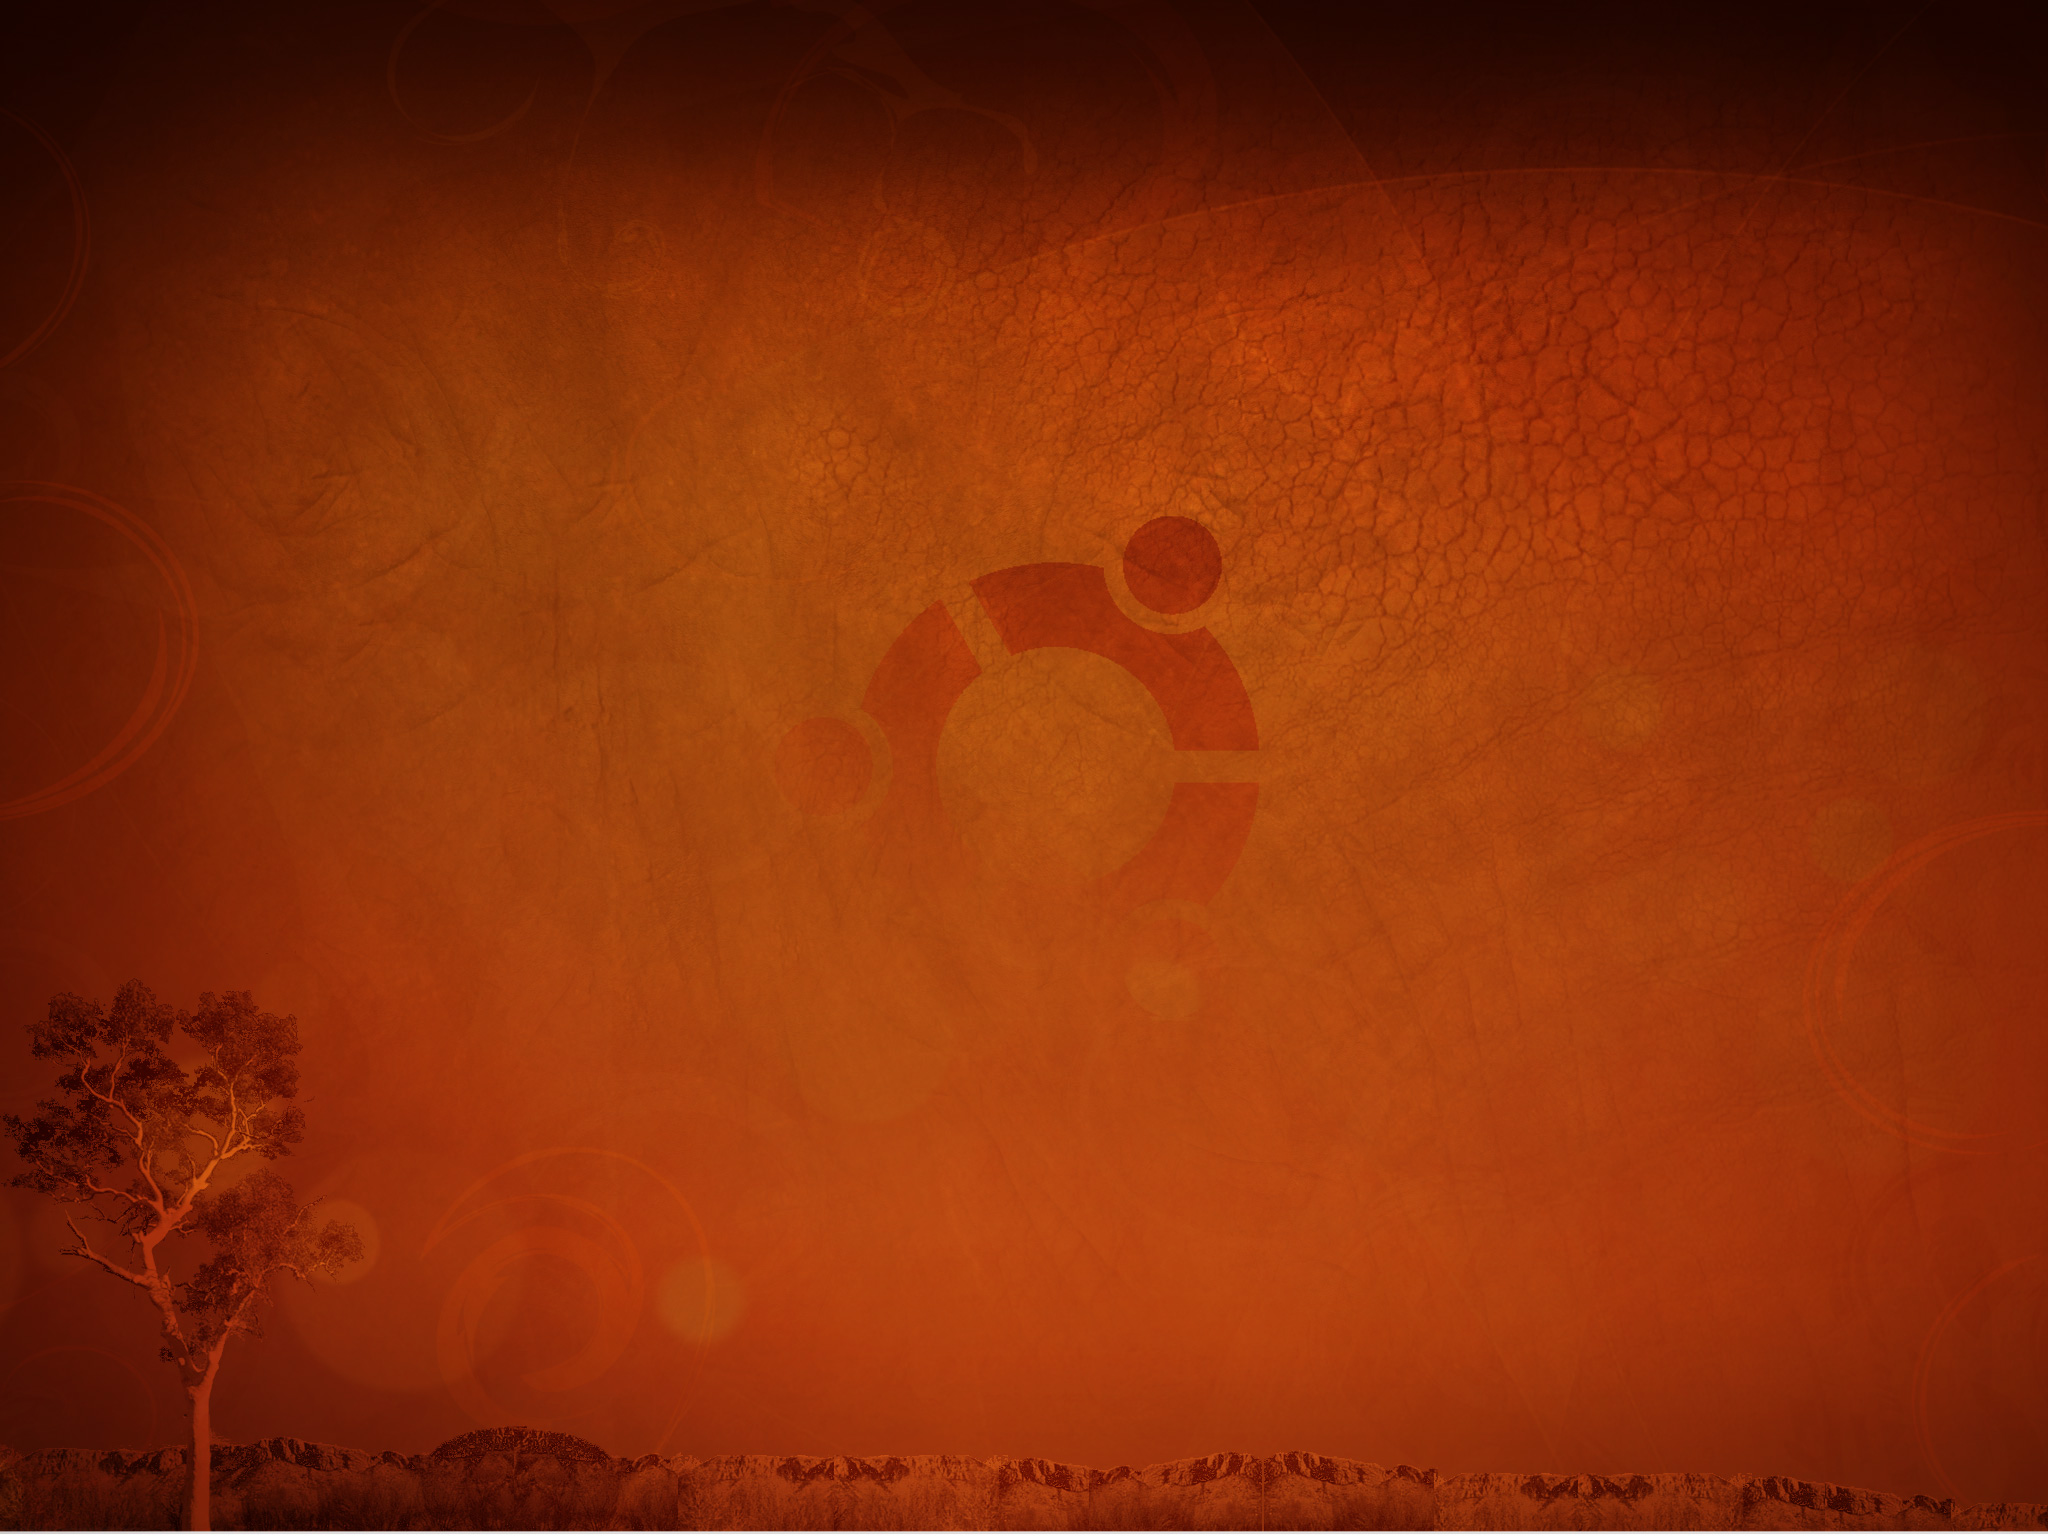 49+] Ubuntu Wallpaper Slideshow - WallpaperSafari